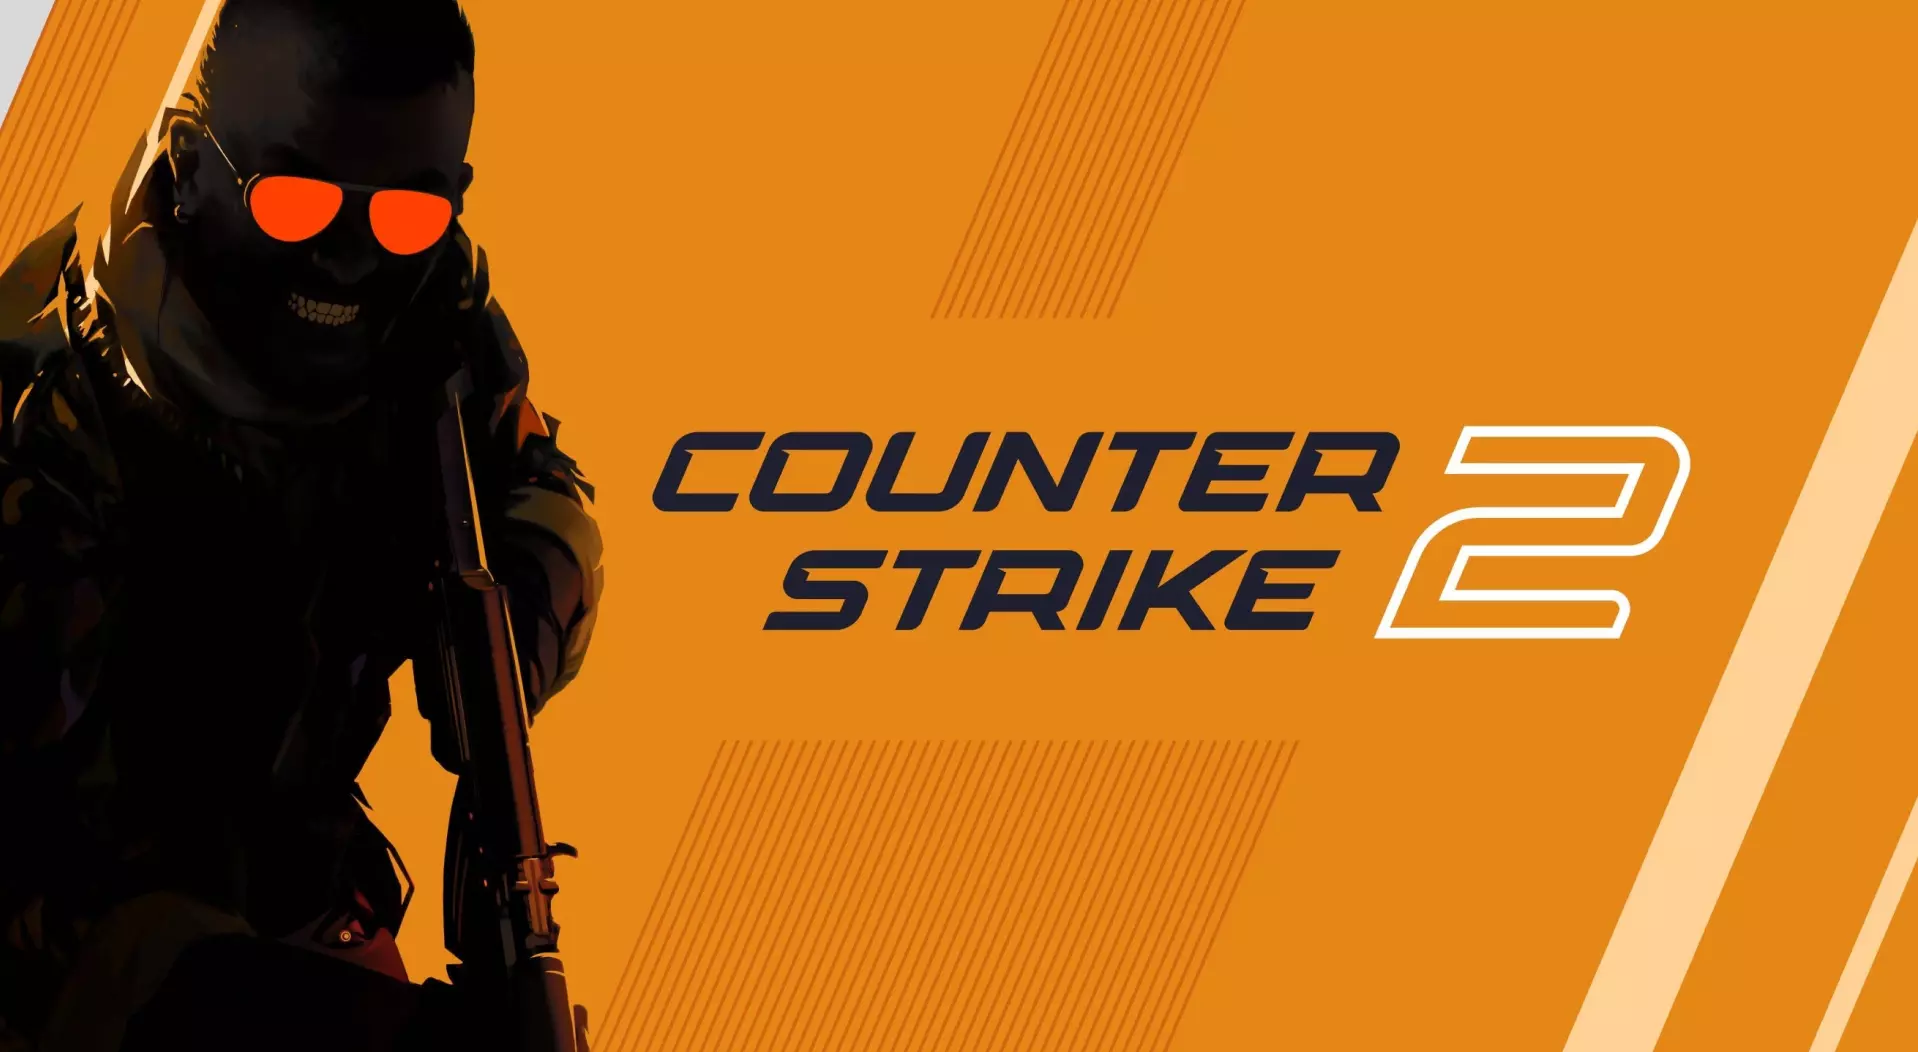 Counter Strike 2 ha un nuovo problema di cheating